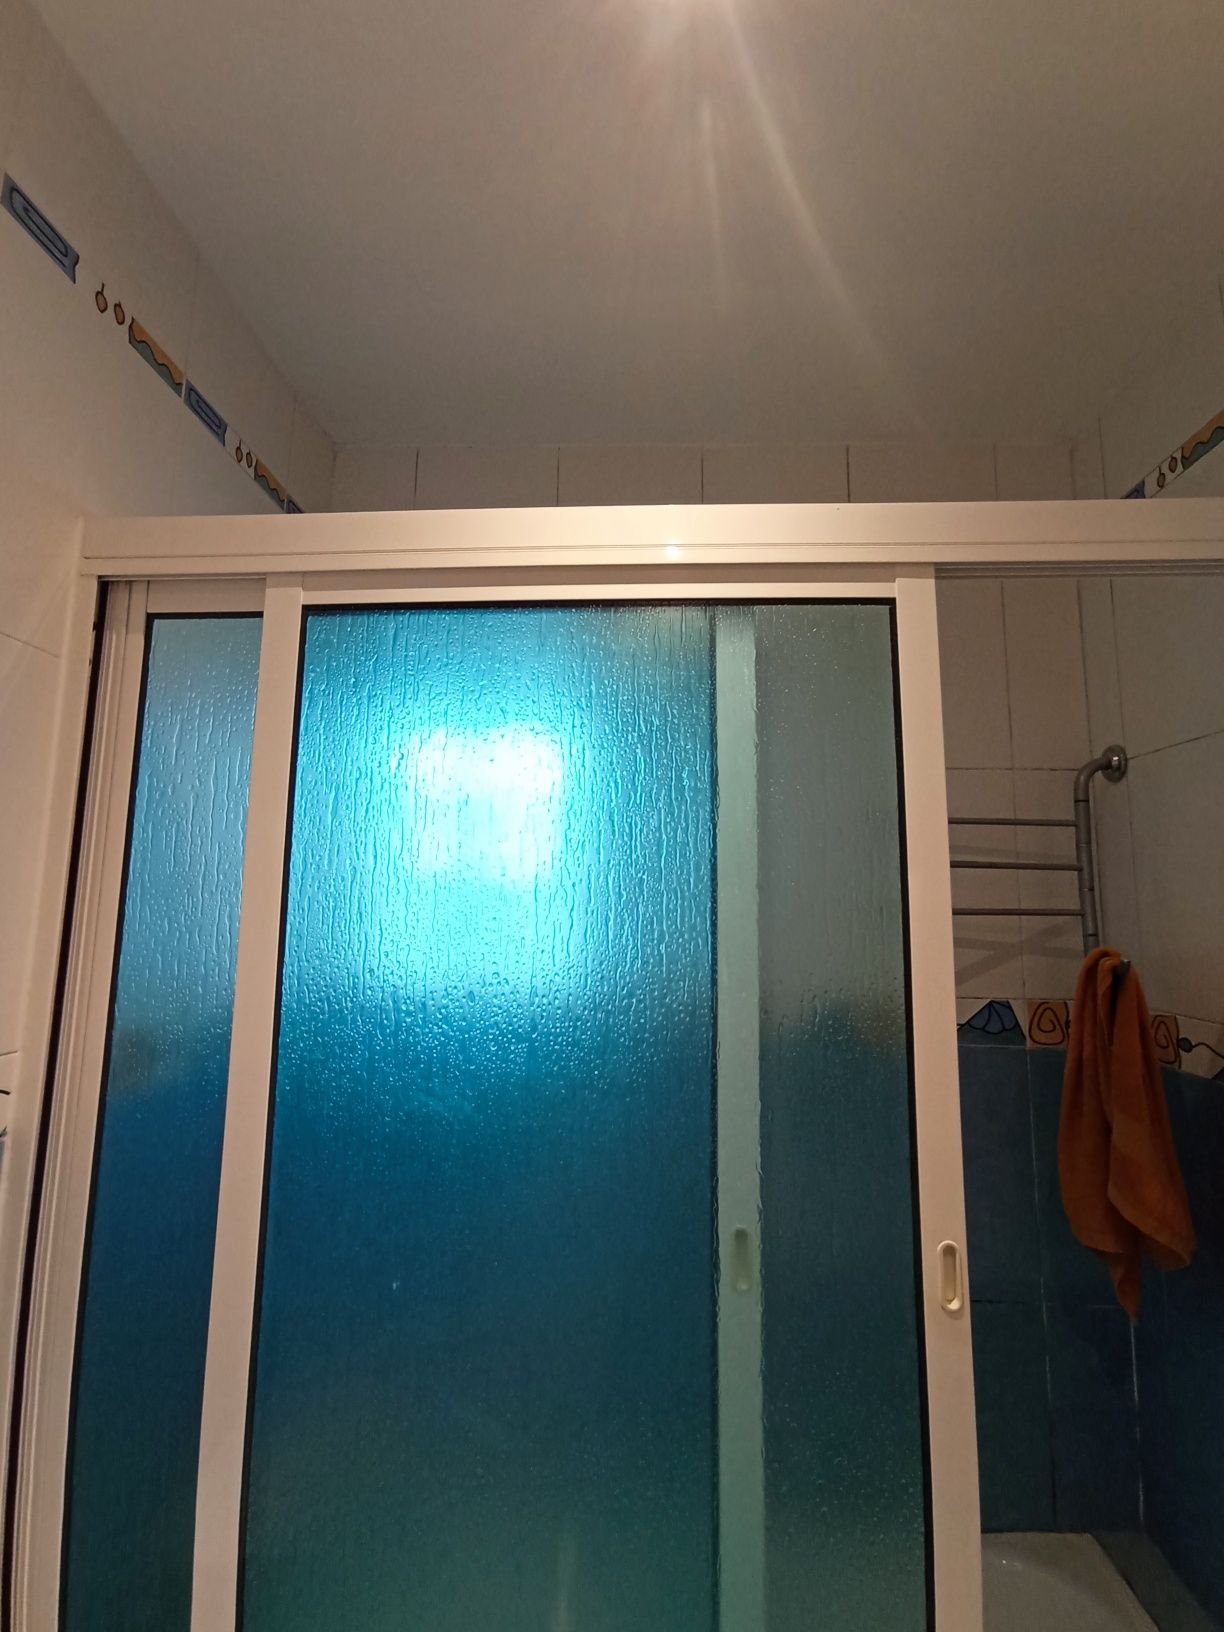 Resguardo cabine de duche banheira